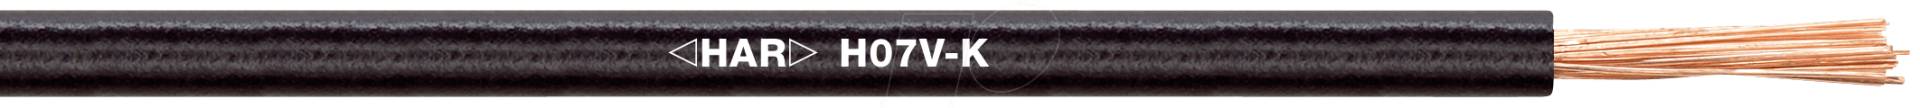 H07VK 16SW-50 - Schaltlitze H07V-K, 16 mm², 50 m, schwarz von LAPP